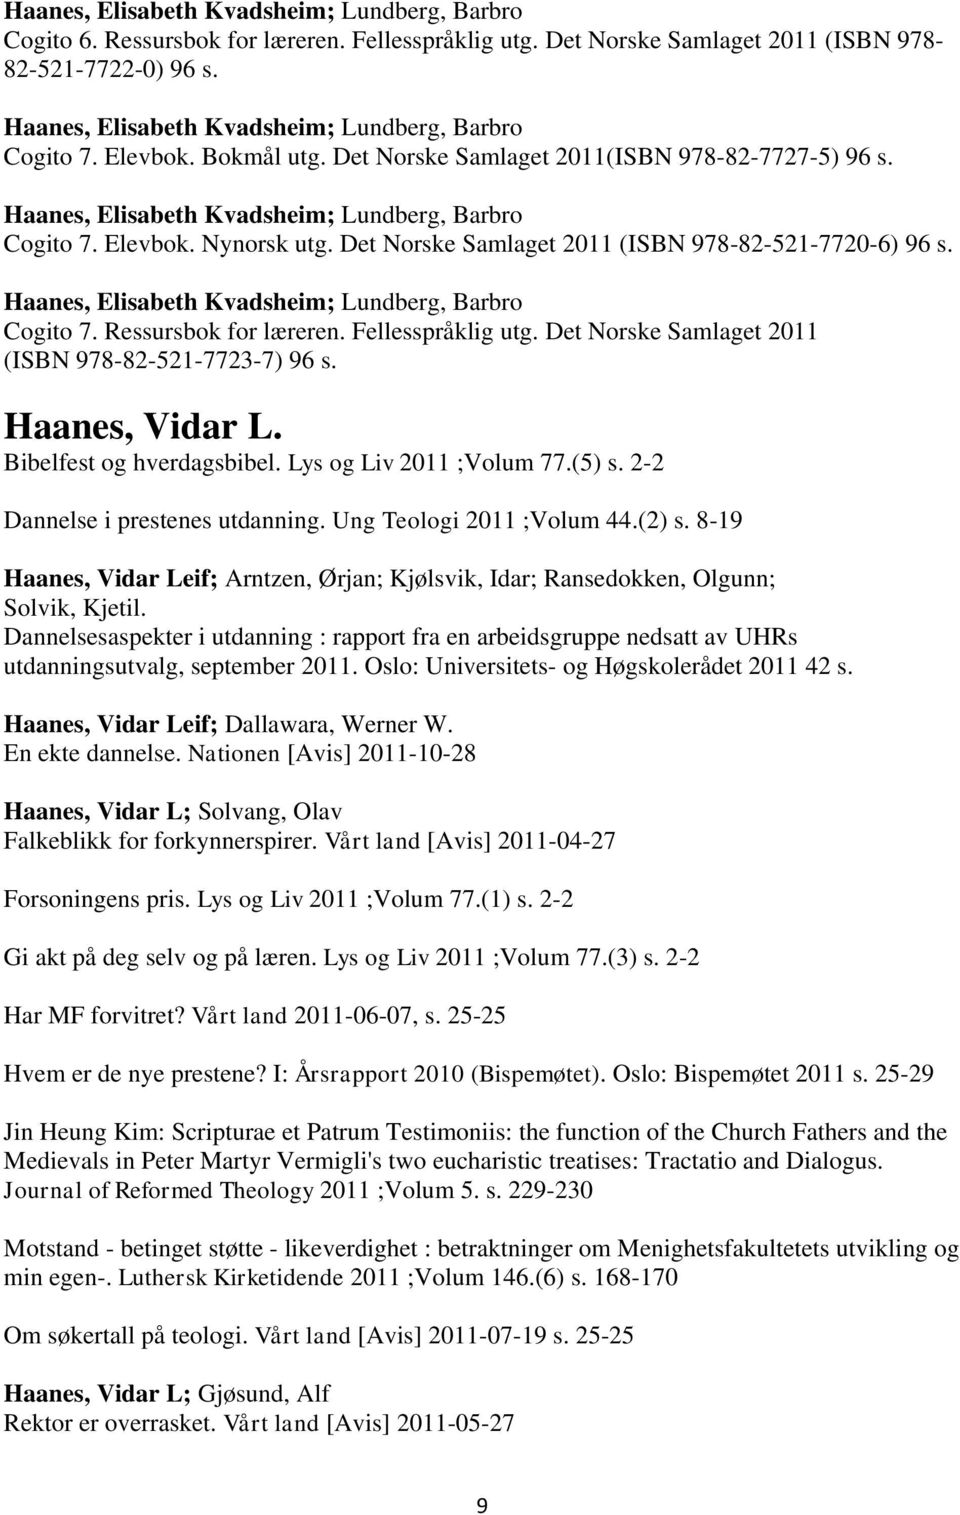 Det Norske Samlaget 2011 (ISBN 978-82-521-7720-6) 96 s. Haanes, Elisabeth Kvadsheim; Lundberg, Barbro Cogito 7. Ressursbok for læreren. Fellesspråklig utg.